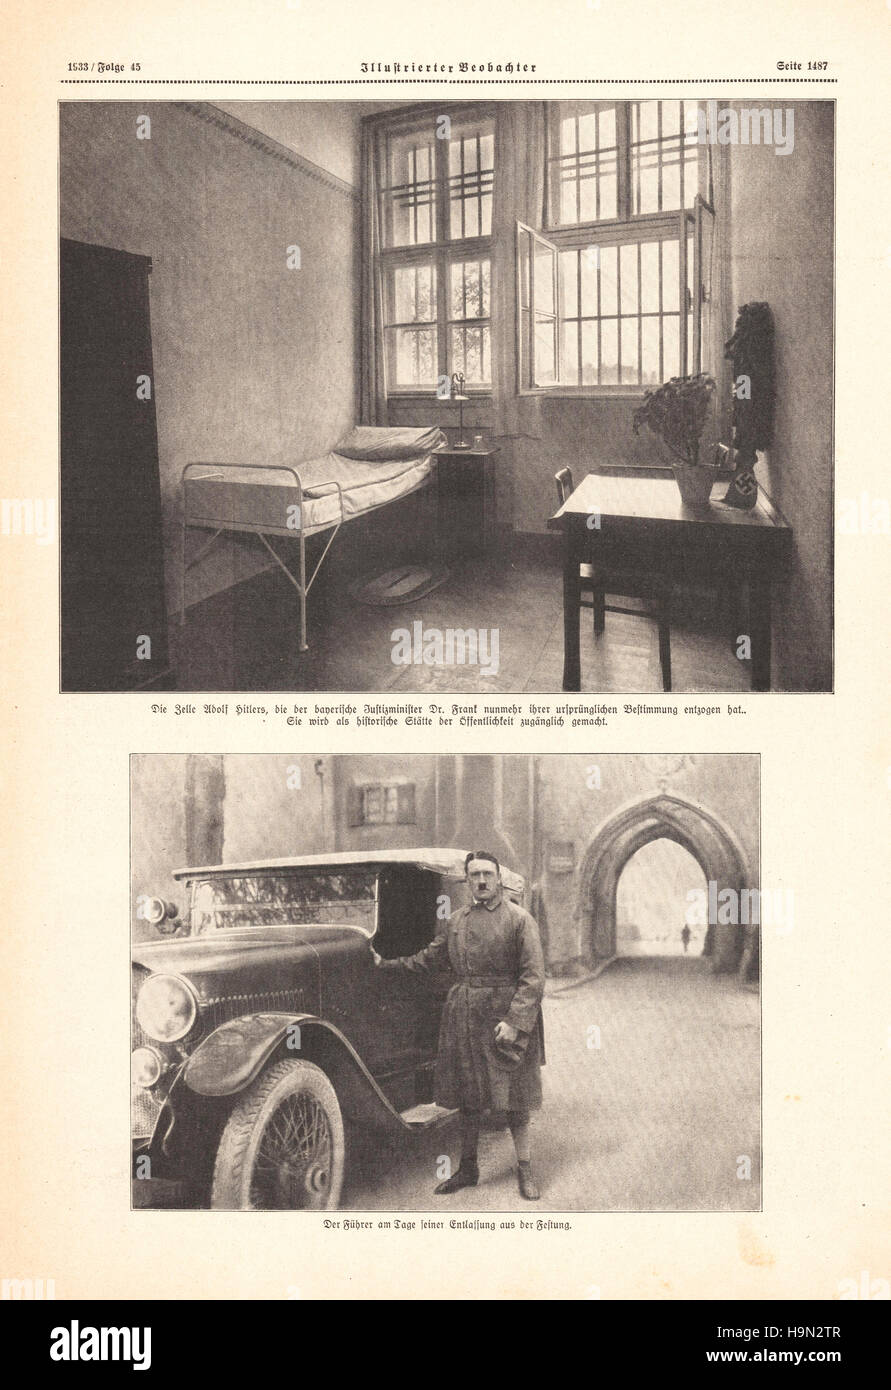 1933 Illustrierte Beobachter pagina 1487 di Adolf Hitler nella cella di prigione Landsberg Foto Stock